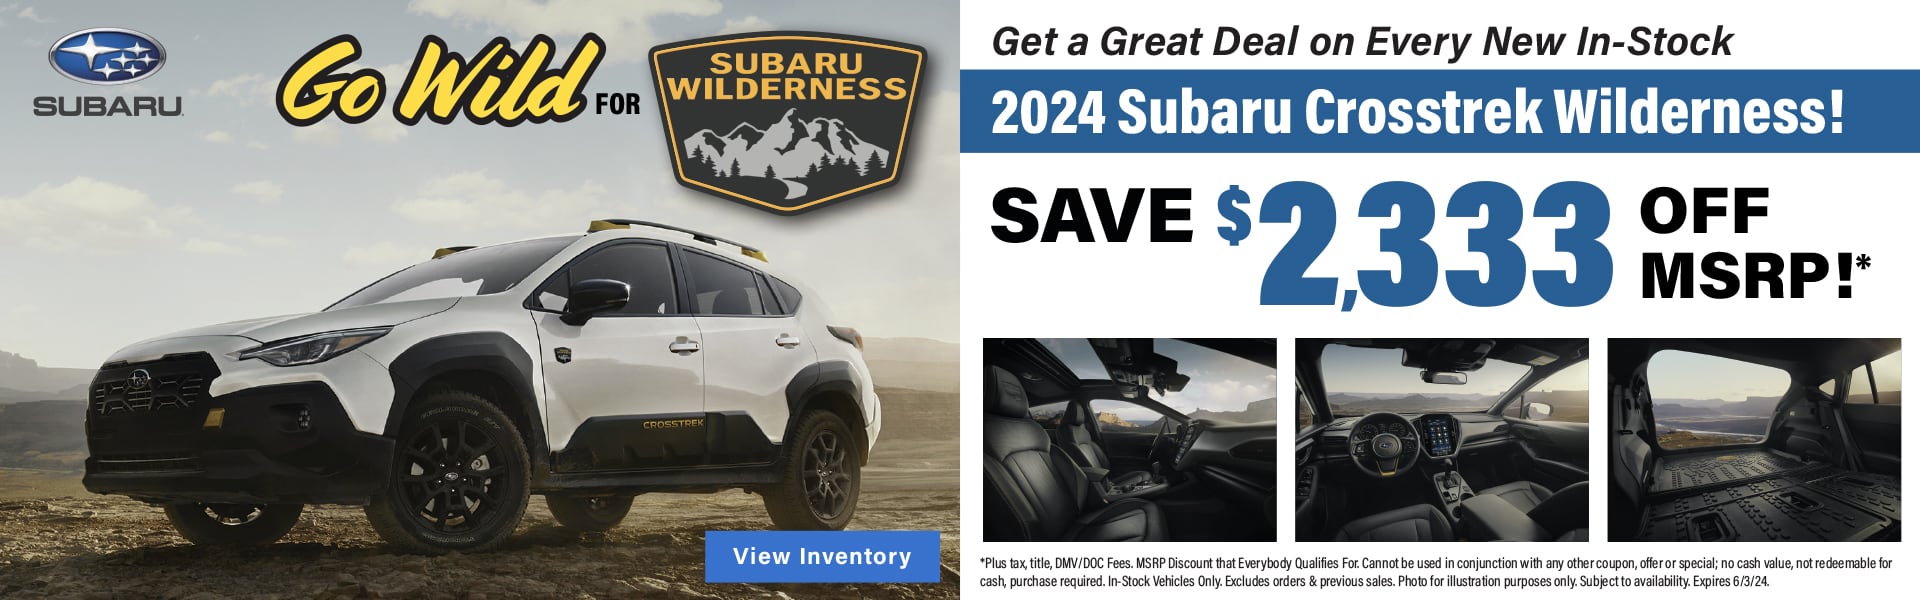 Go Wild for Subaru Crosstrek Wilderness!